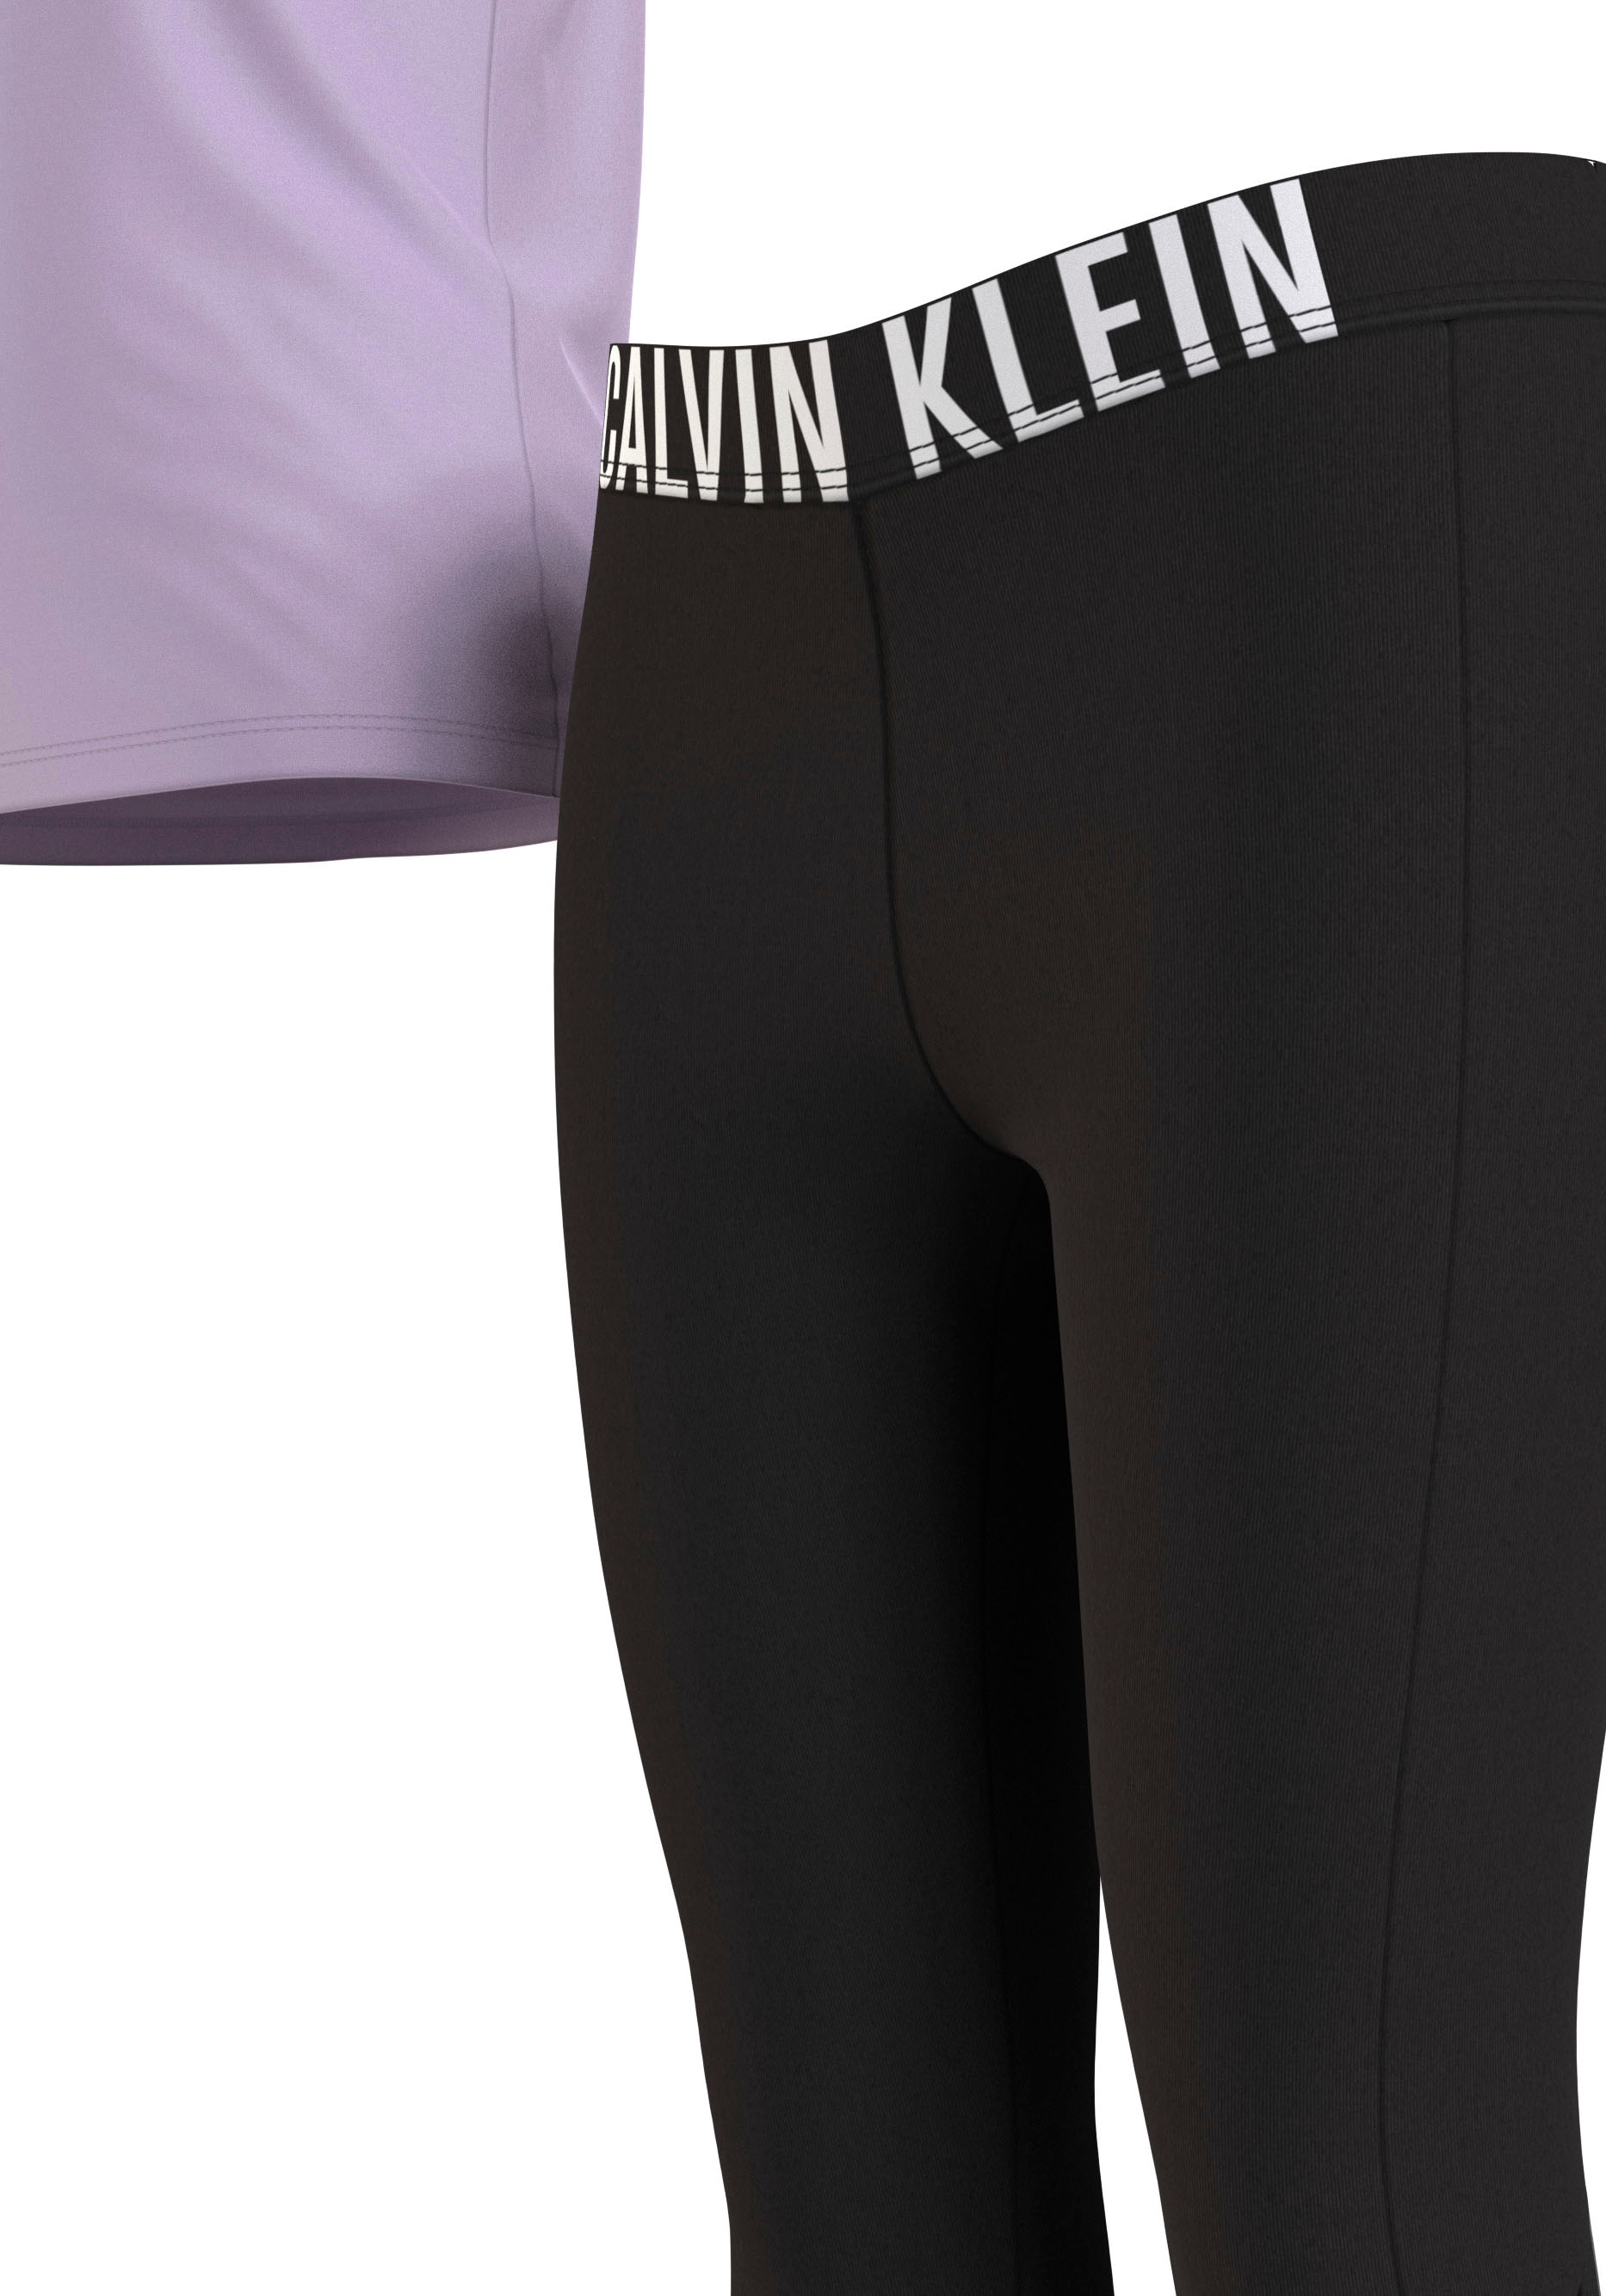 Calvin Klein Pyjama »KNIT PJ SET (SS+LEGGING)«, (2 tlg.), mit leicht  transparenten Beineinsätzen online bestellen | BAUR